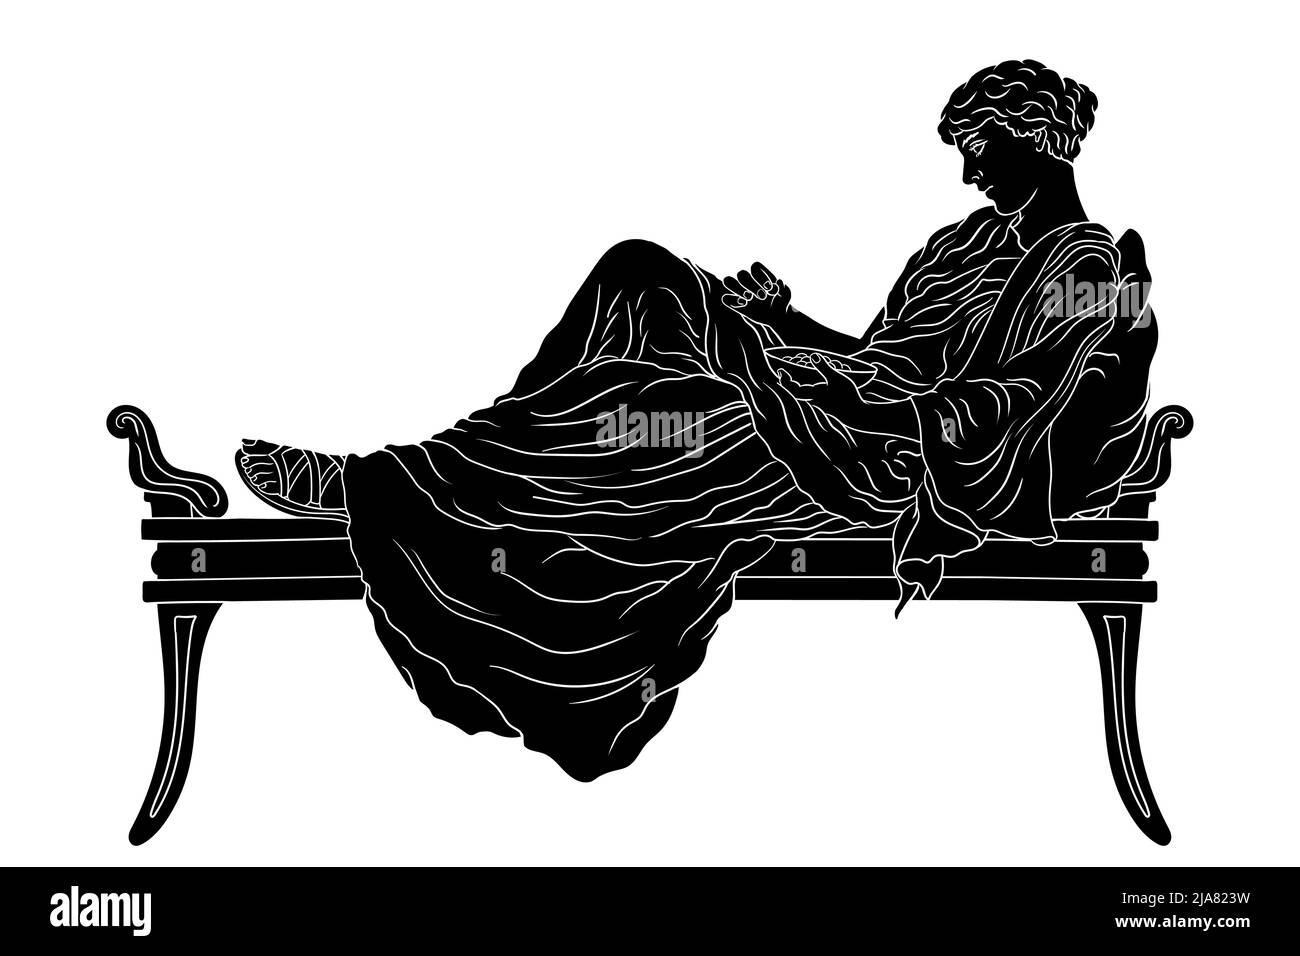 Eine junge alte griechische Frau liegt mit Kissen auf dem Bett und isst Früchte aus der Schale, die auf weißem Hintergrund isoliert ist. Stock Vektor